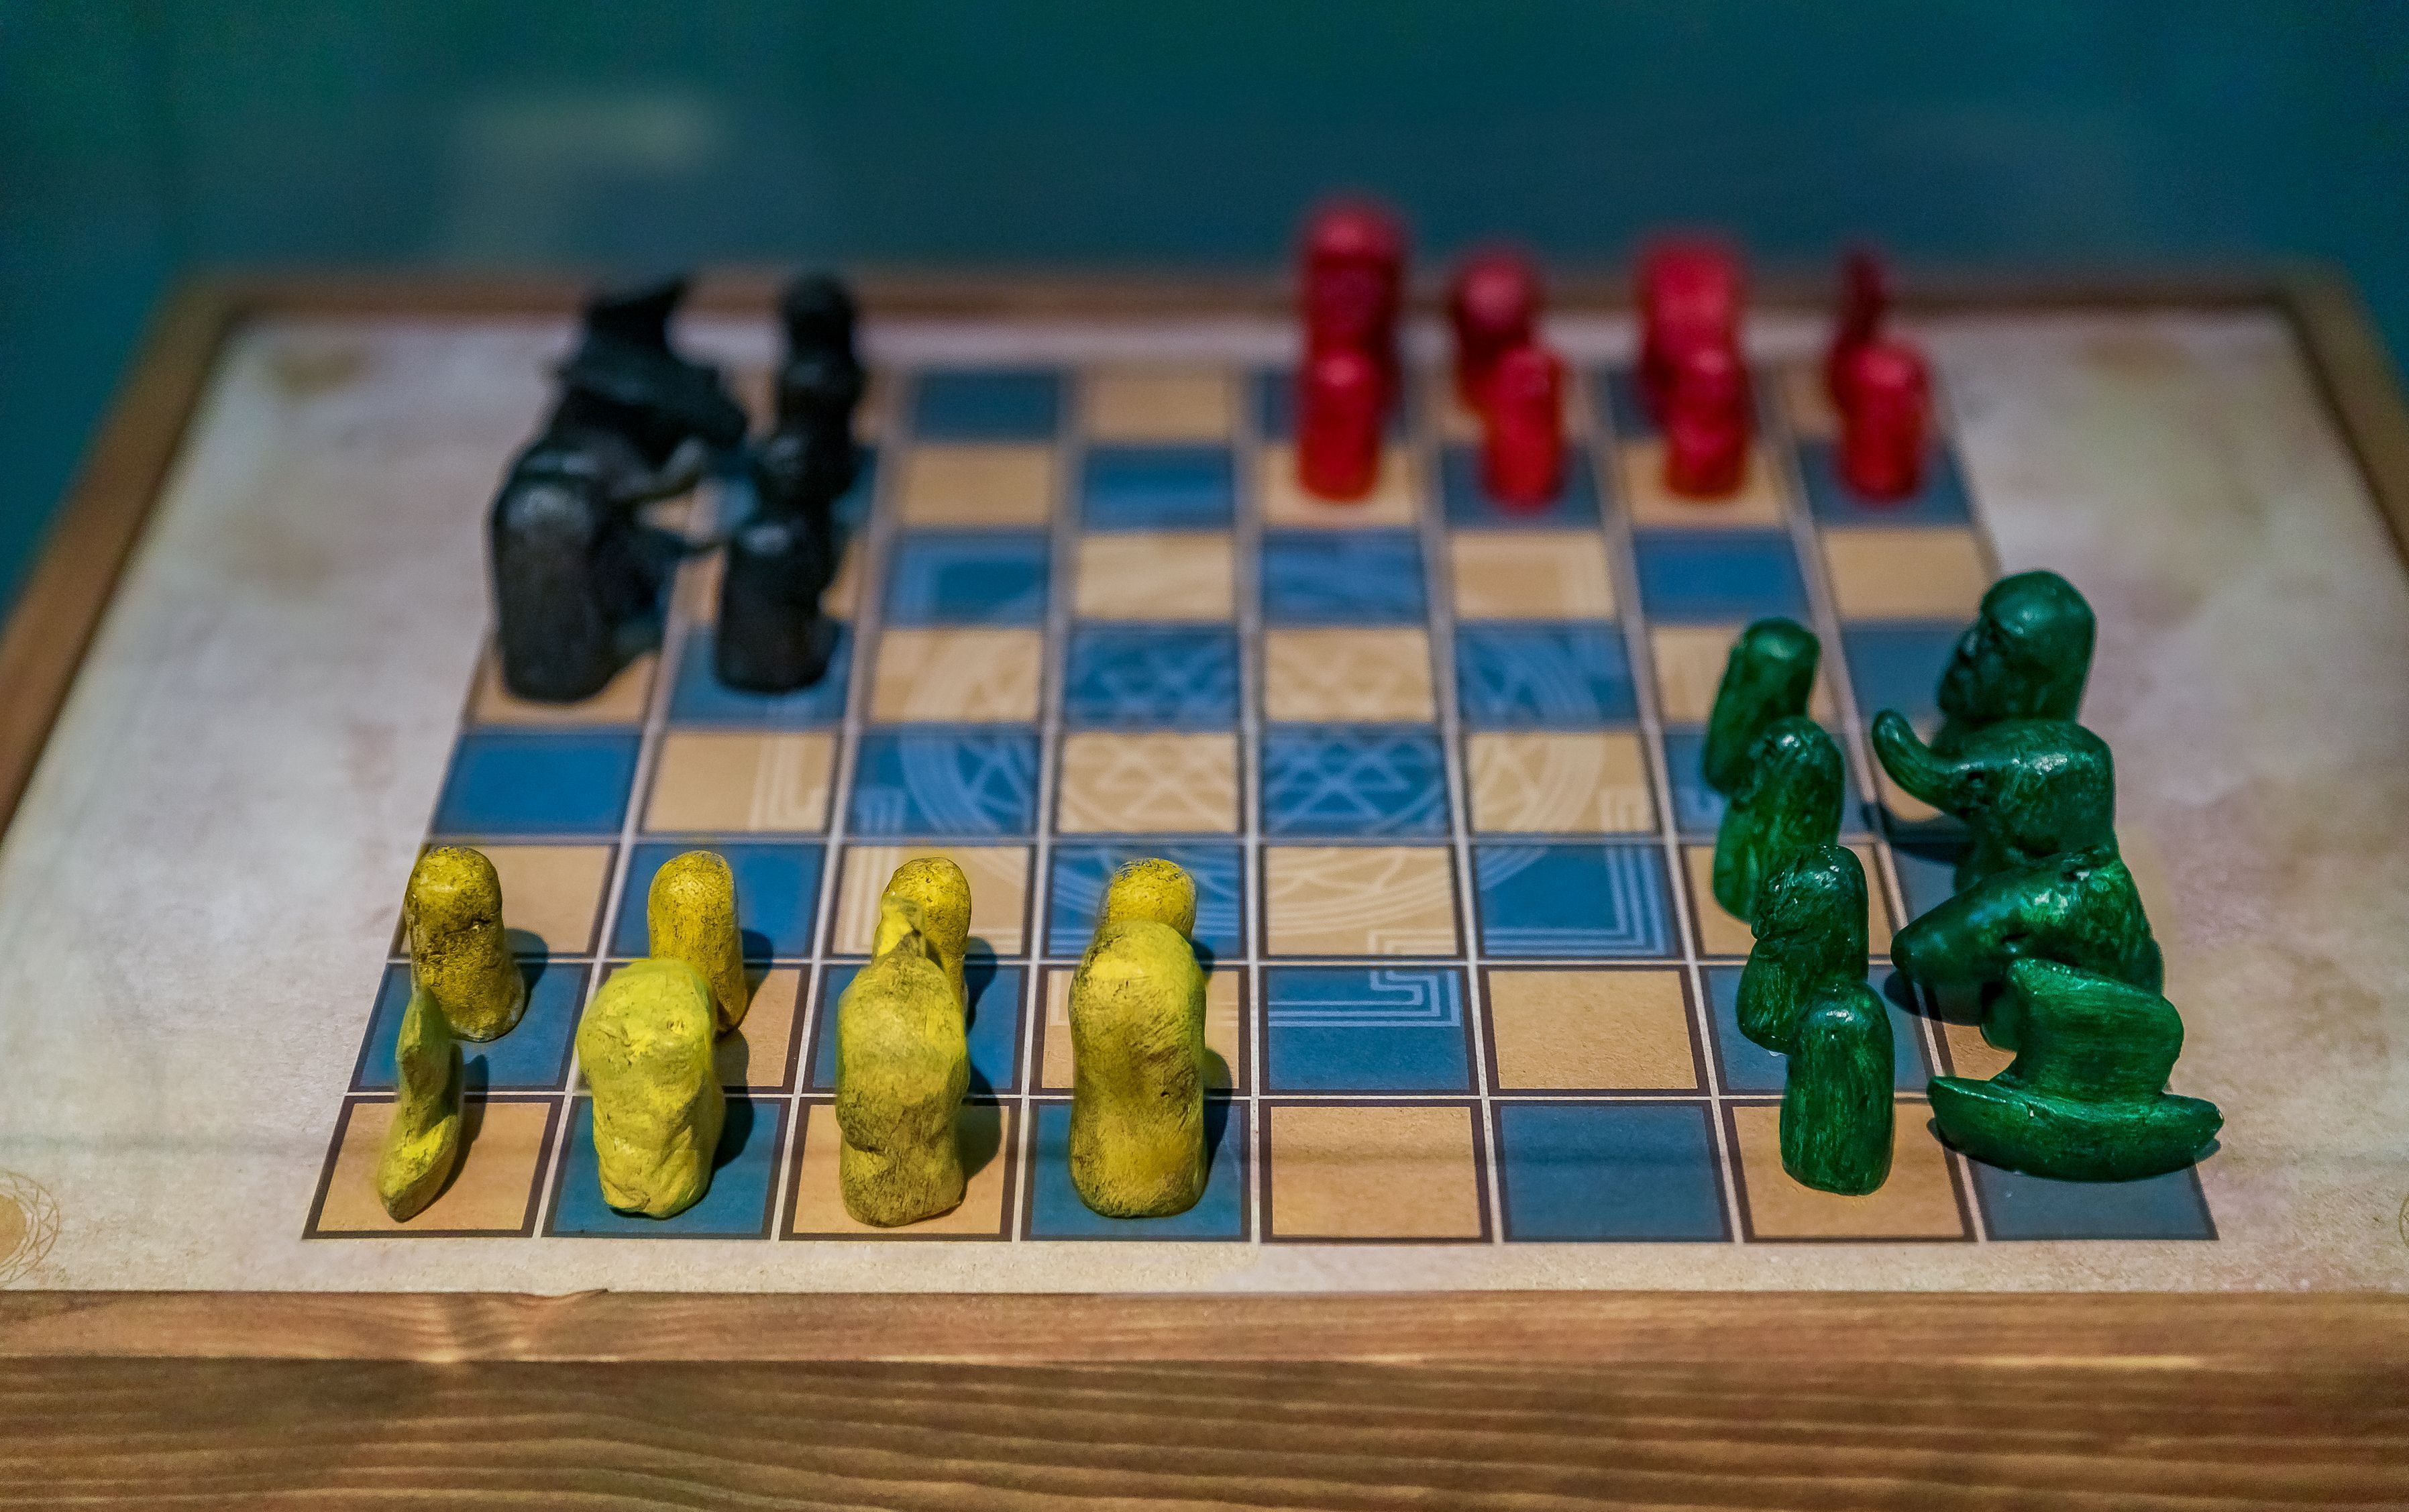 Chaturanga: Four-Player Chess With Dice - HobbyLark